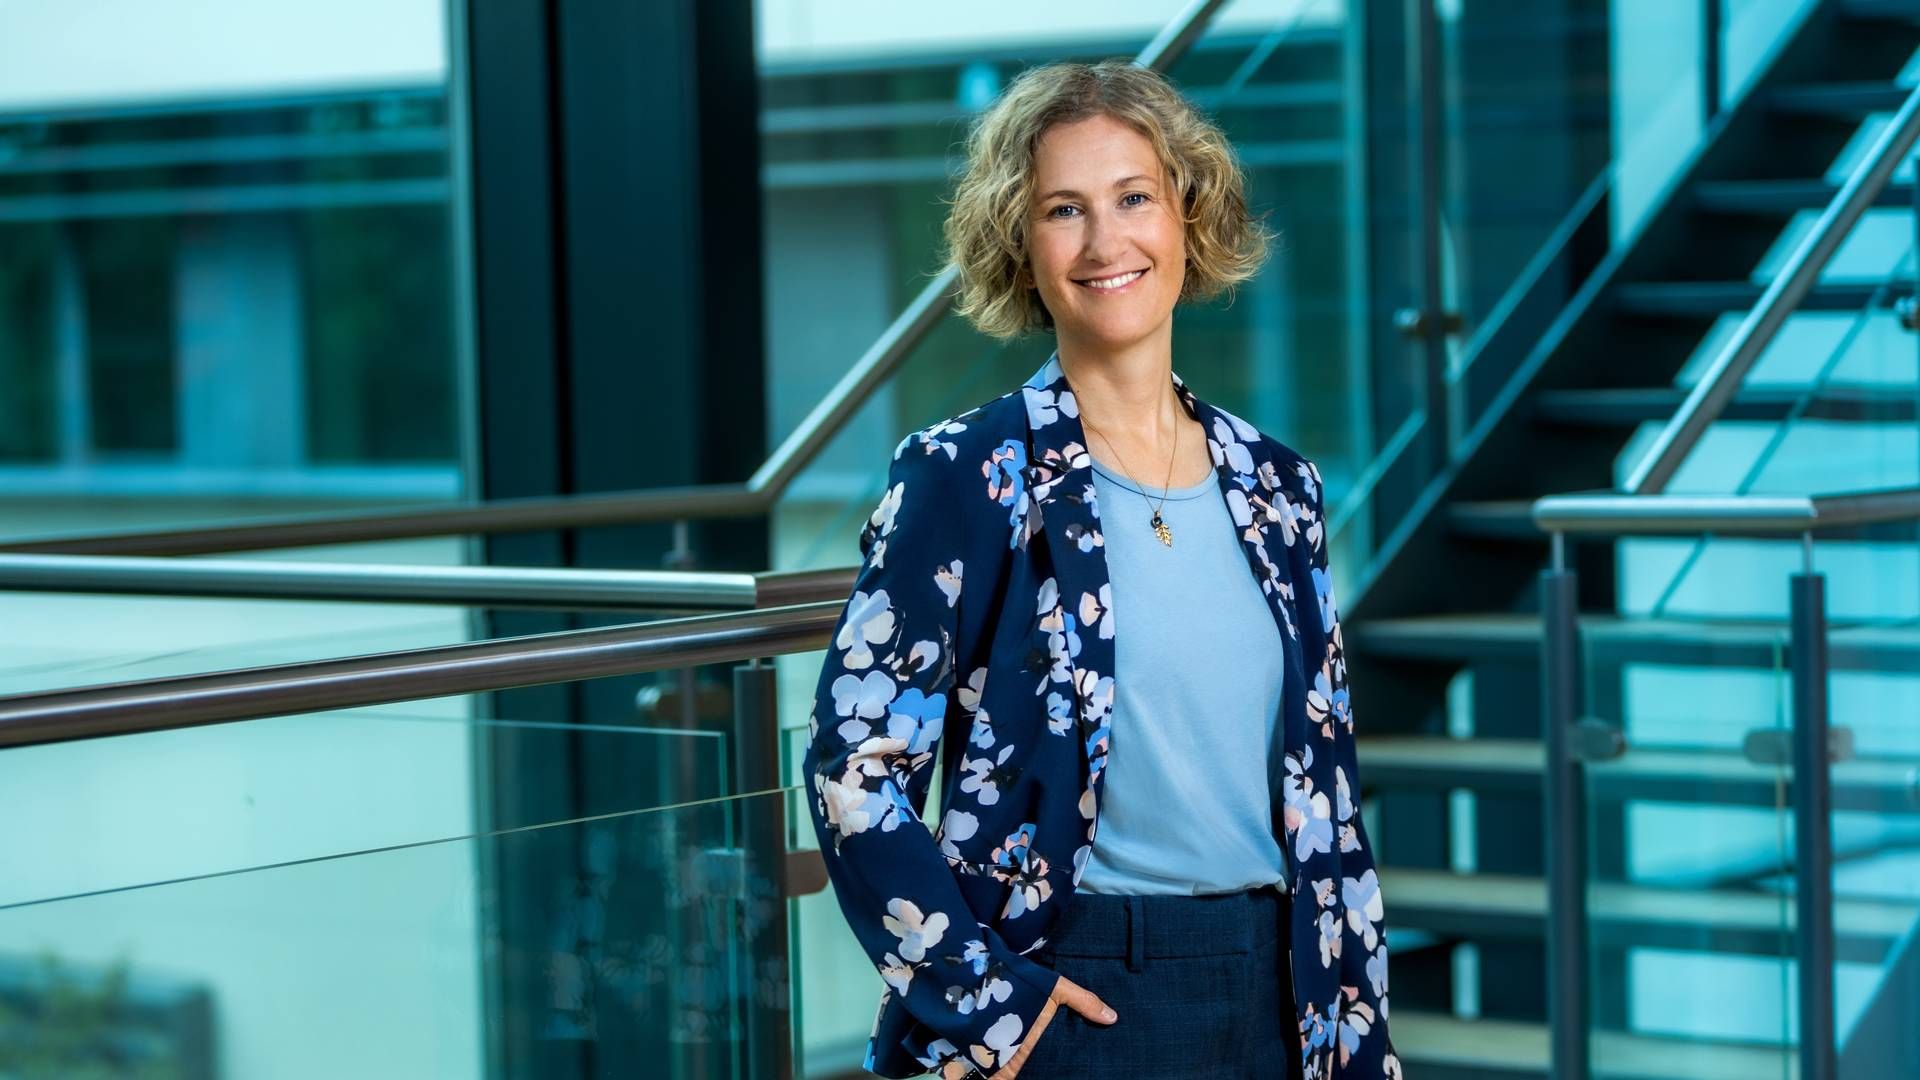 Kirsten Porskær Ovesen skifter arbejdsplads efter 20 år som blandt andet HR-partner hos Accenture. | Foto: PR.